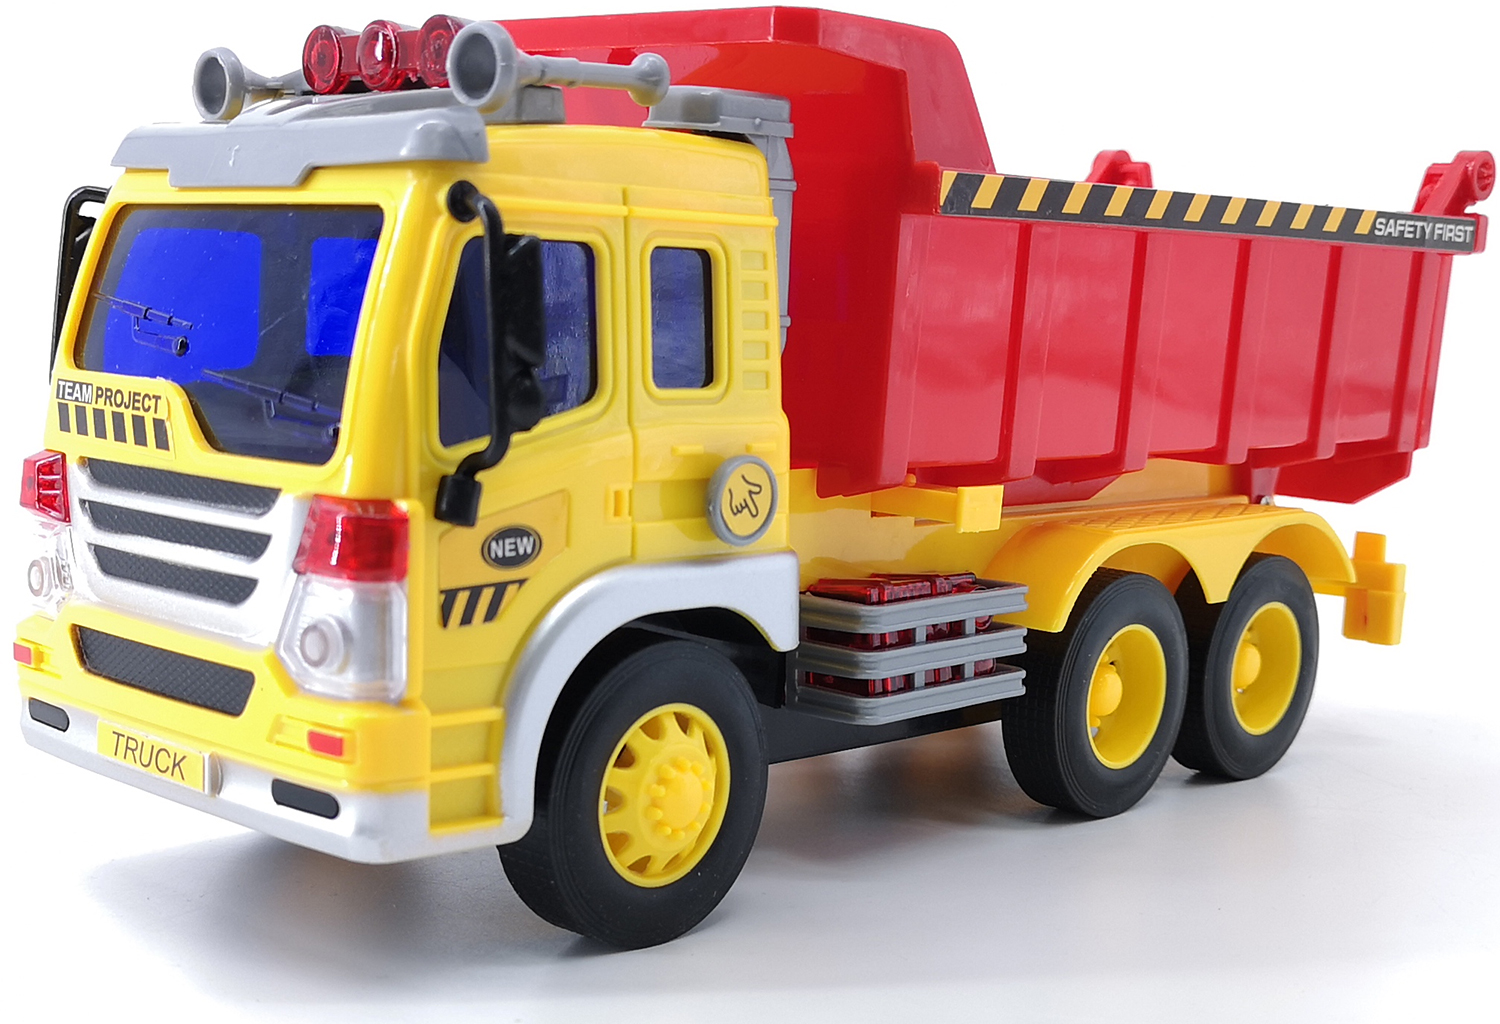 Грузовик Fun Toy инерционный, электромеханический 44404 грузовик fun toy инерционный электромеханический 44404